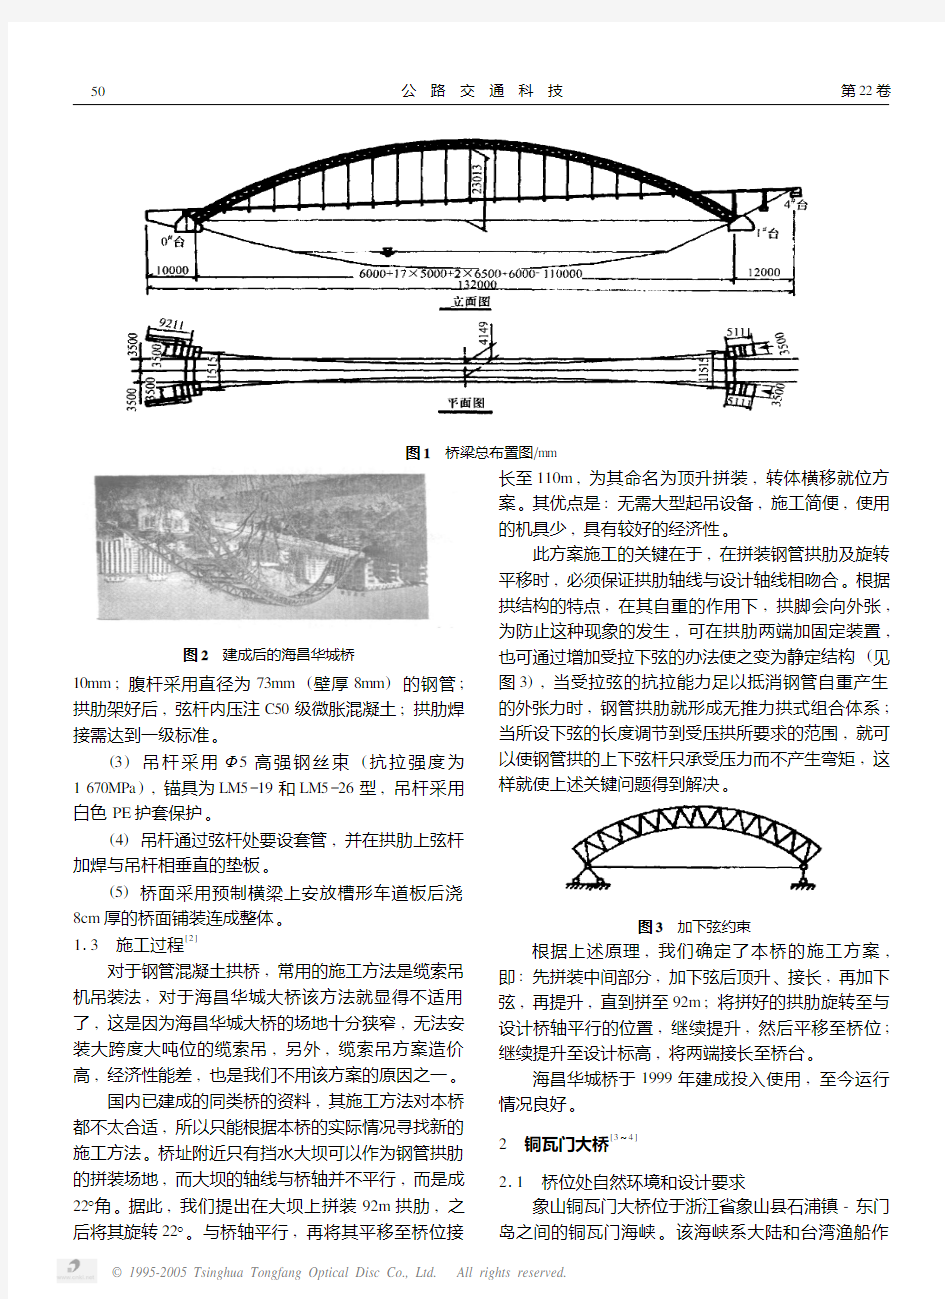 大跨度钢管混凝土窄拱桥的设计实践探索